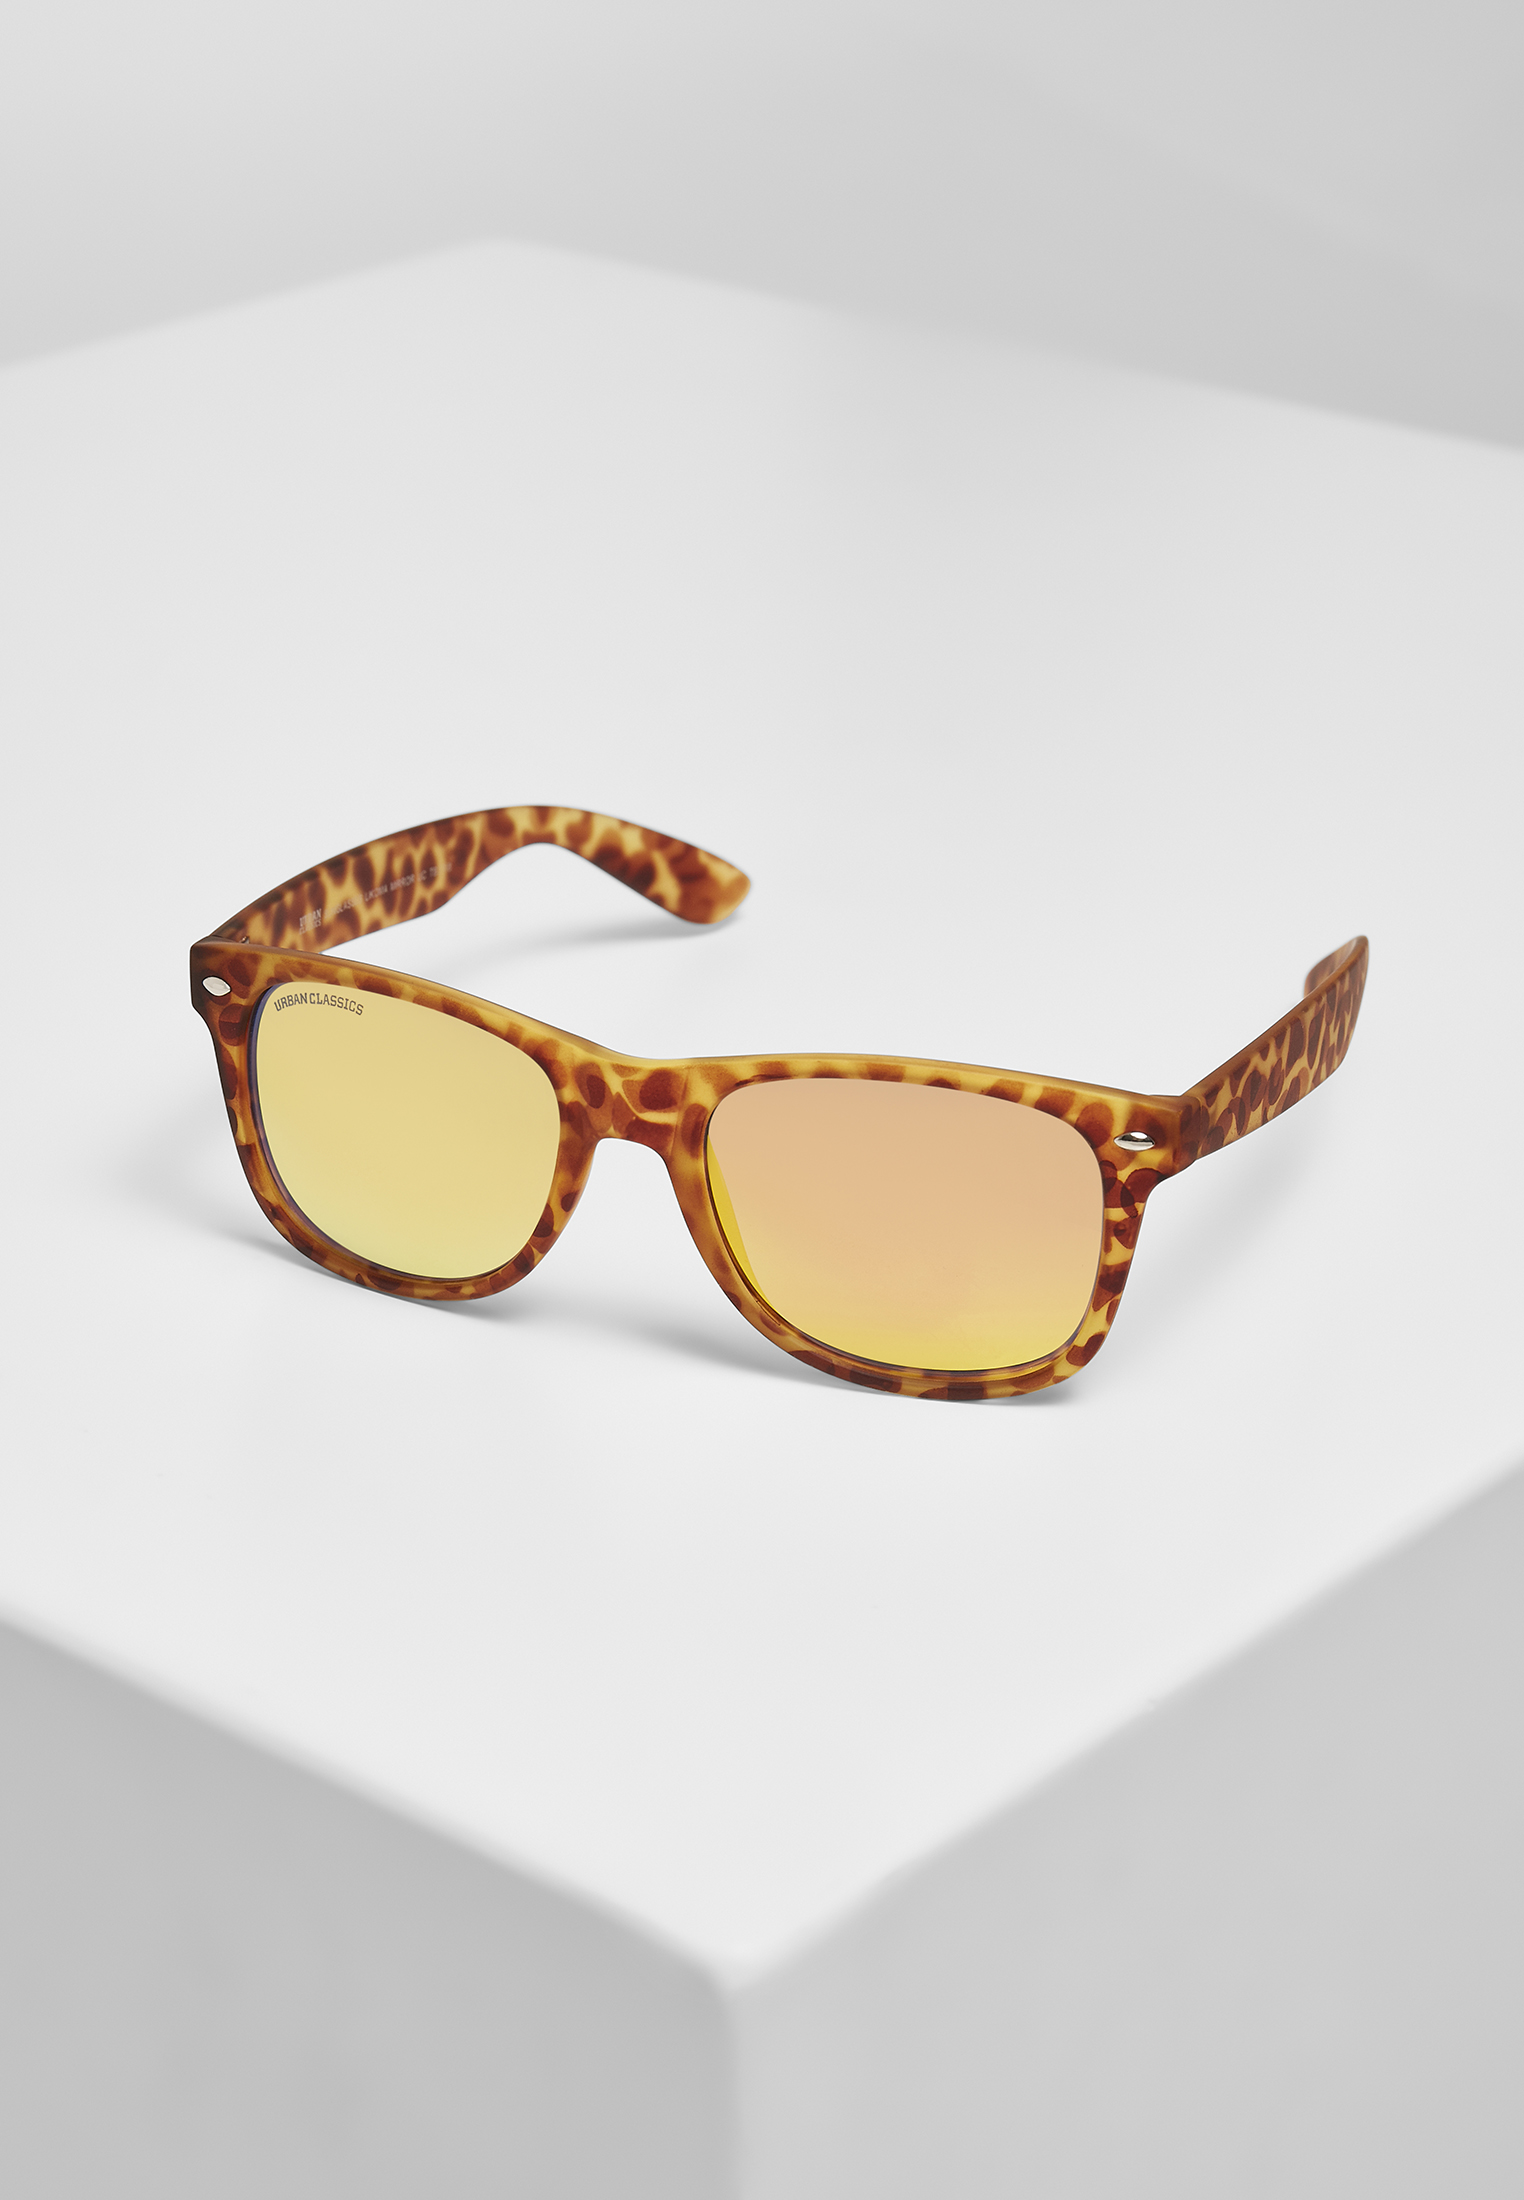 Sonnenbrillen Sunglasses Likoma Mirror UC in Farbe brown leo/orange